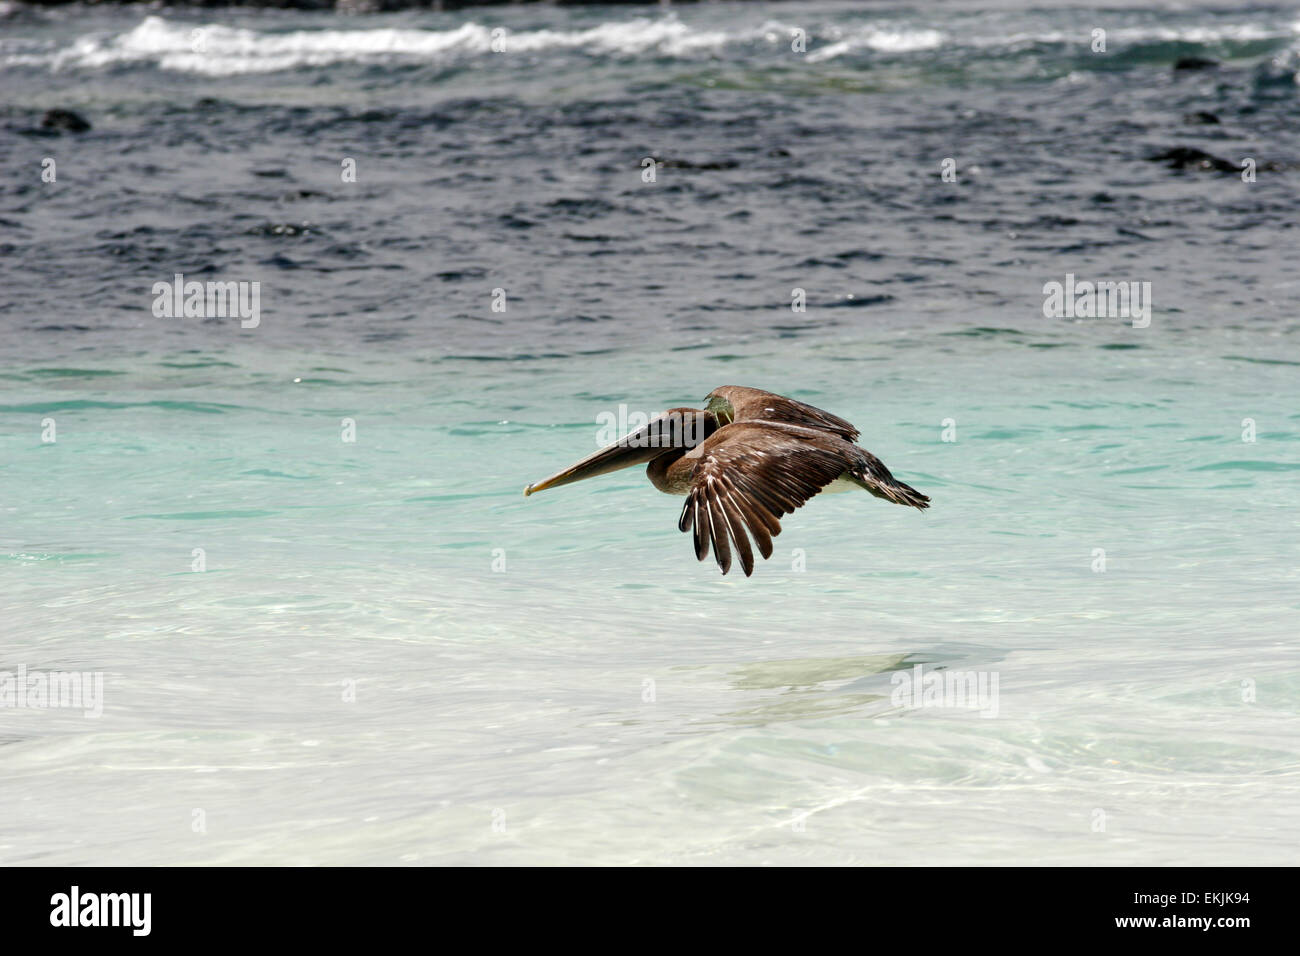 Pélican brun (Pelecanus occidentalis) survolant la mer, Puerto Ayora, Santa Cruz island, îles Galapagos, Equateur Banque D'Images